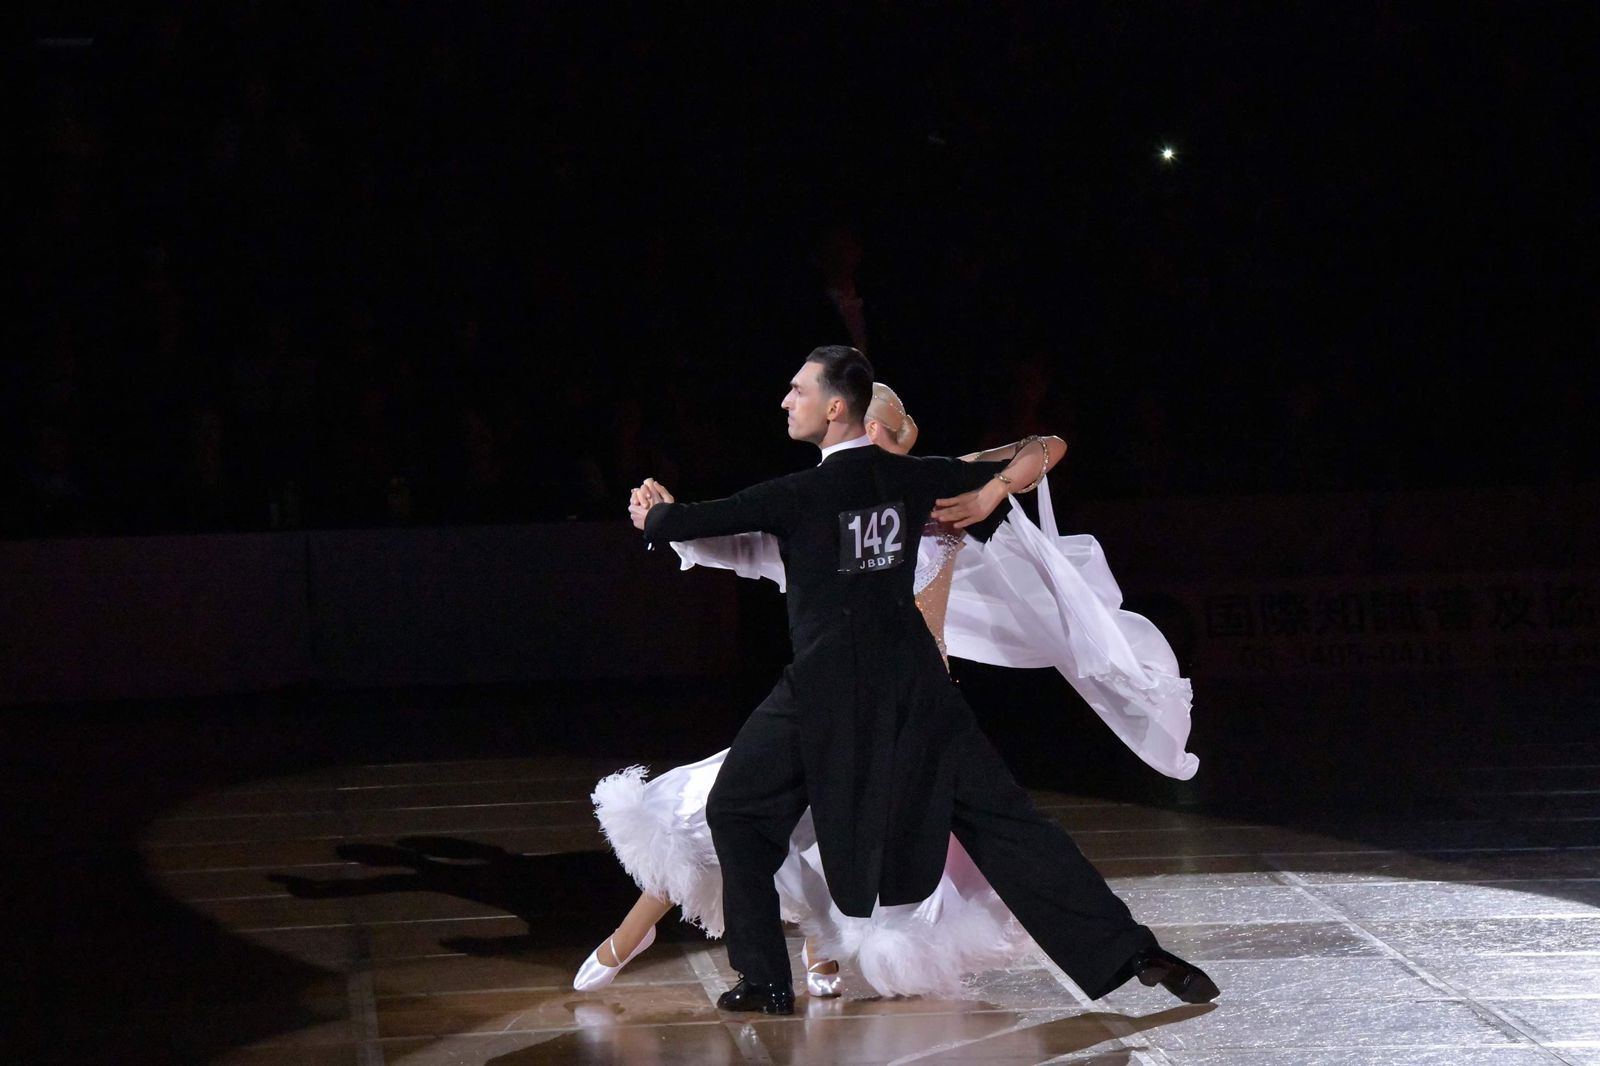 Представители Азербайджана признаны лучшими танцорами из 250 дуэтов в Японии (ВИДЕО, ФОТО)